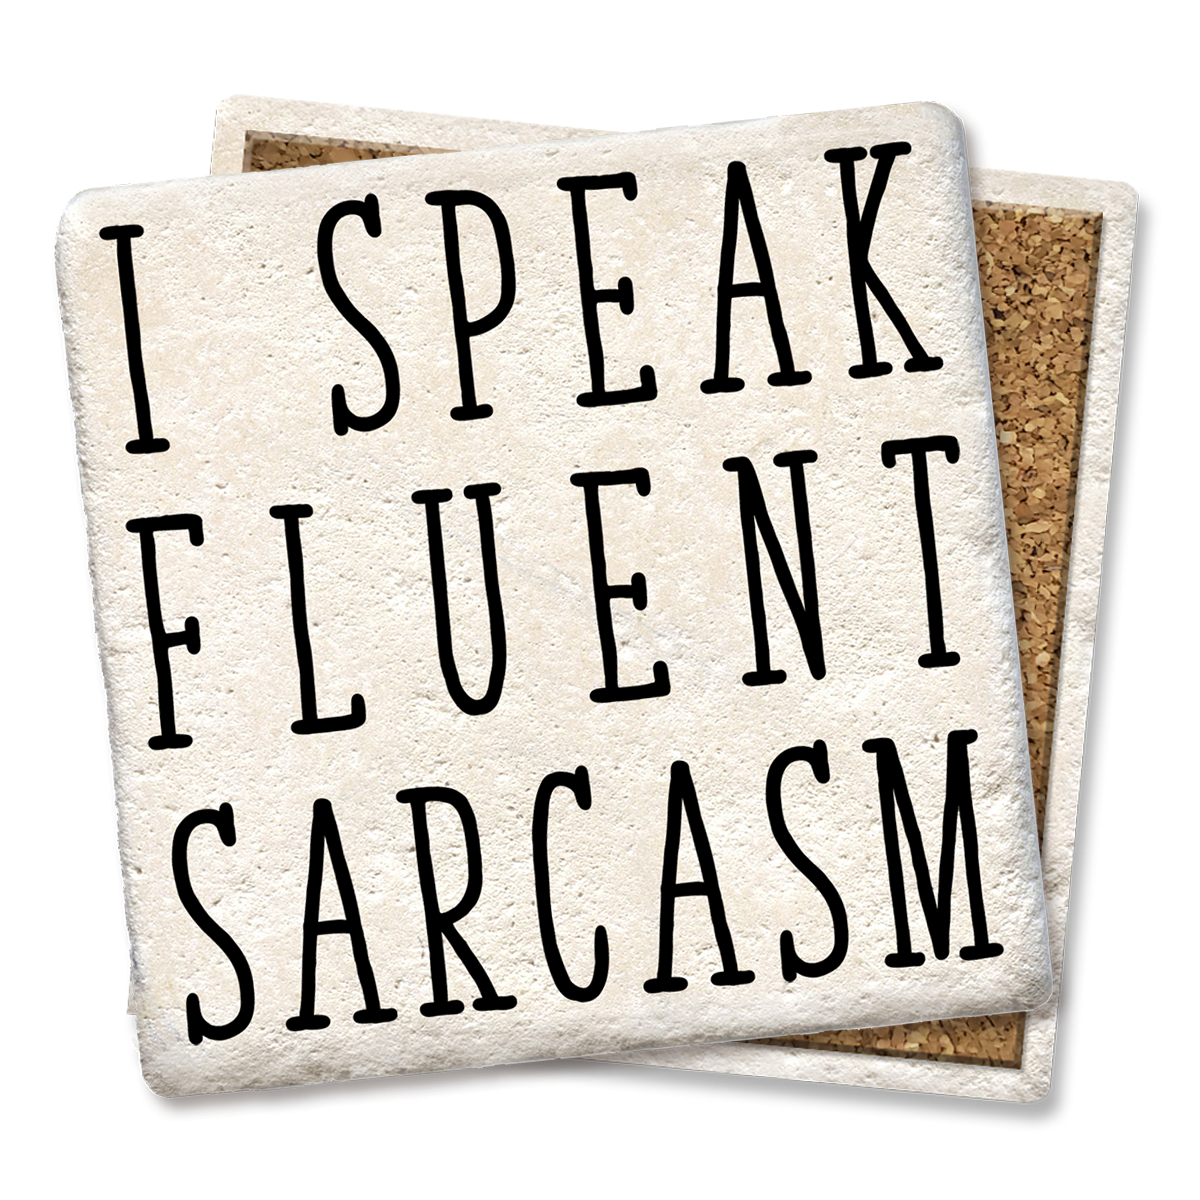 I Speak Fluent Sarcasm Coaster